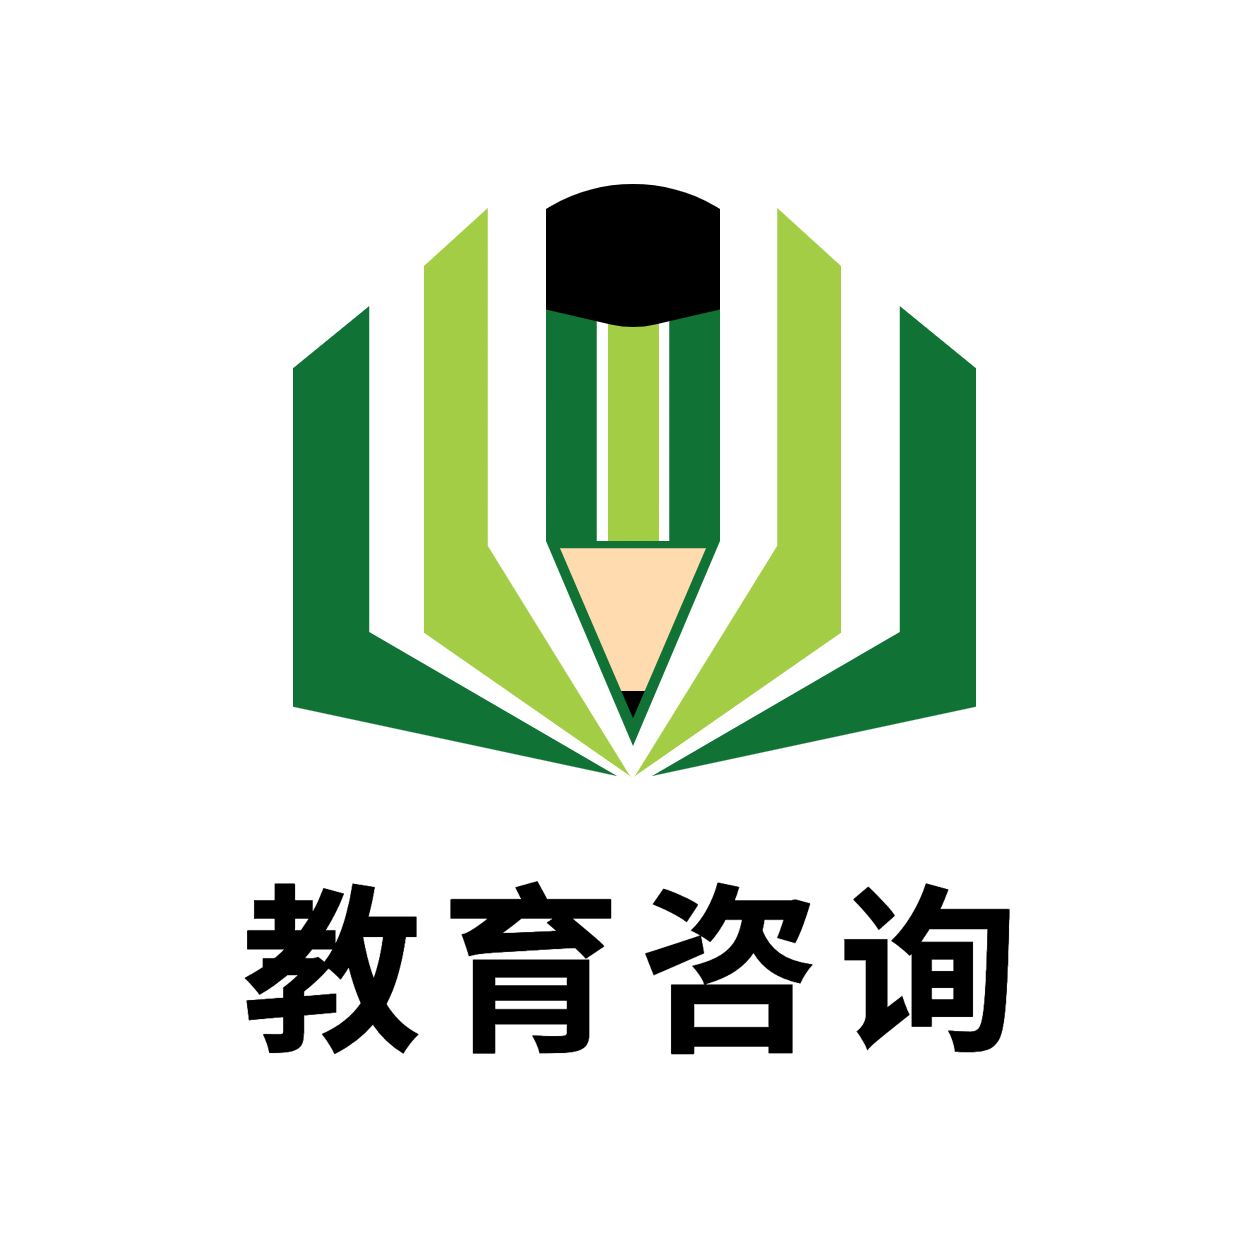 教育培训品牌宣传创意logo